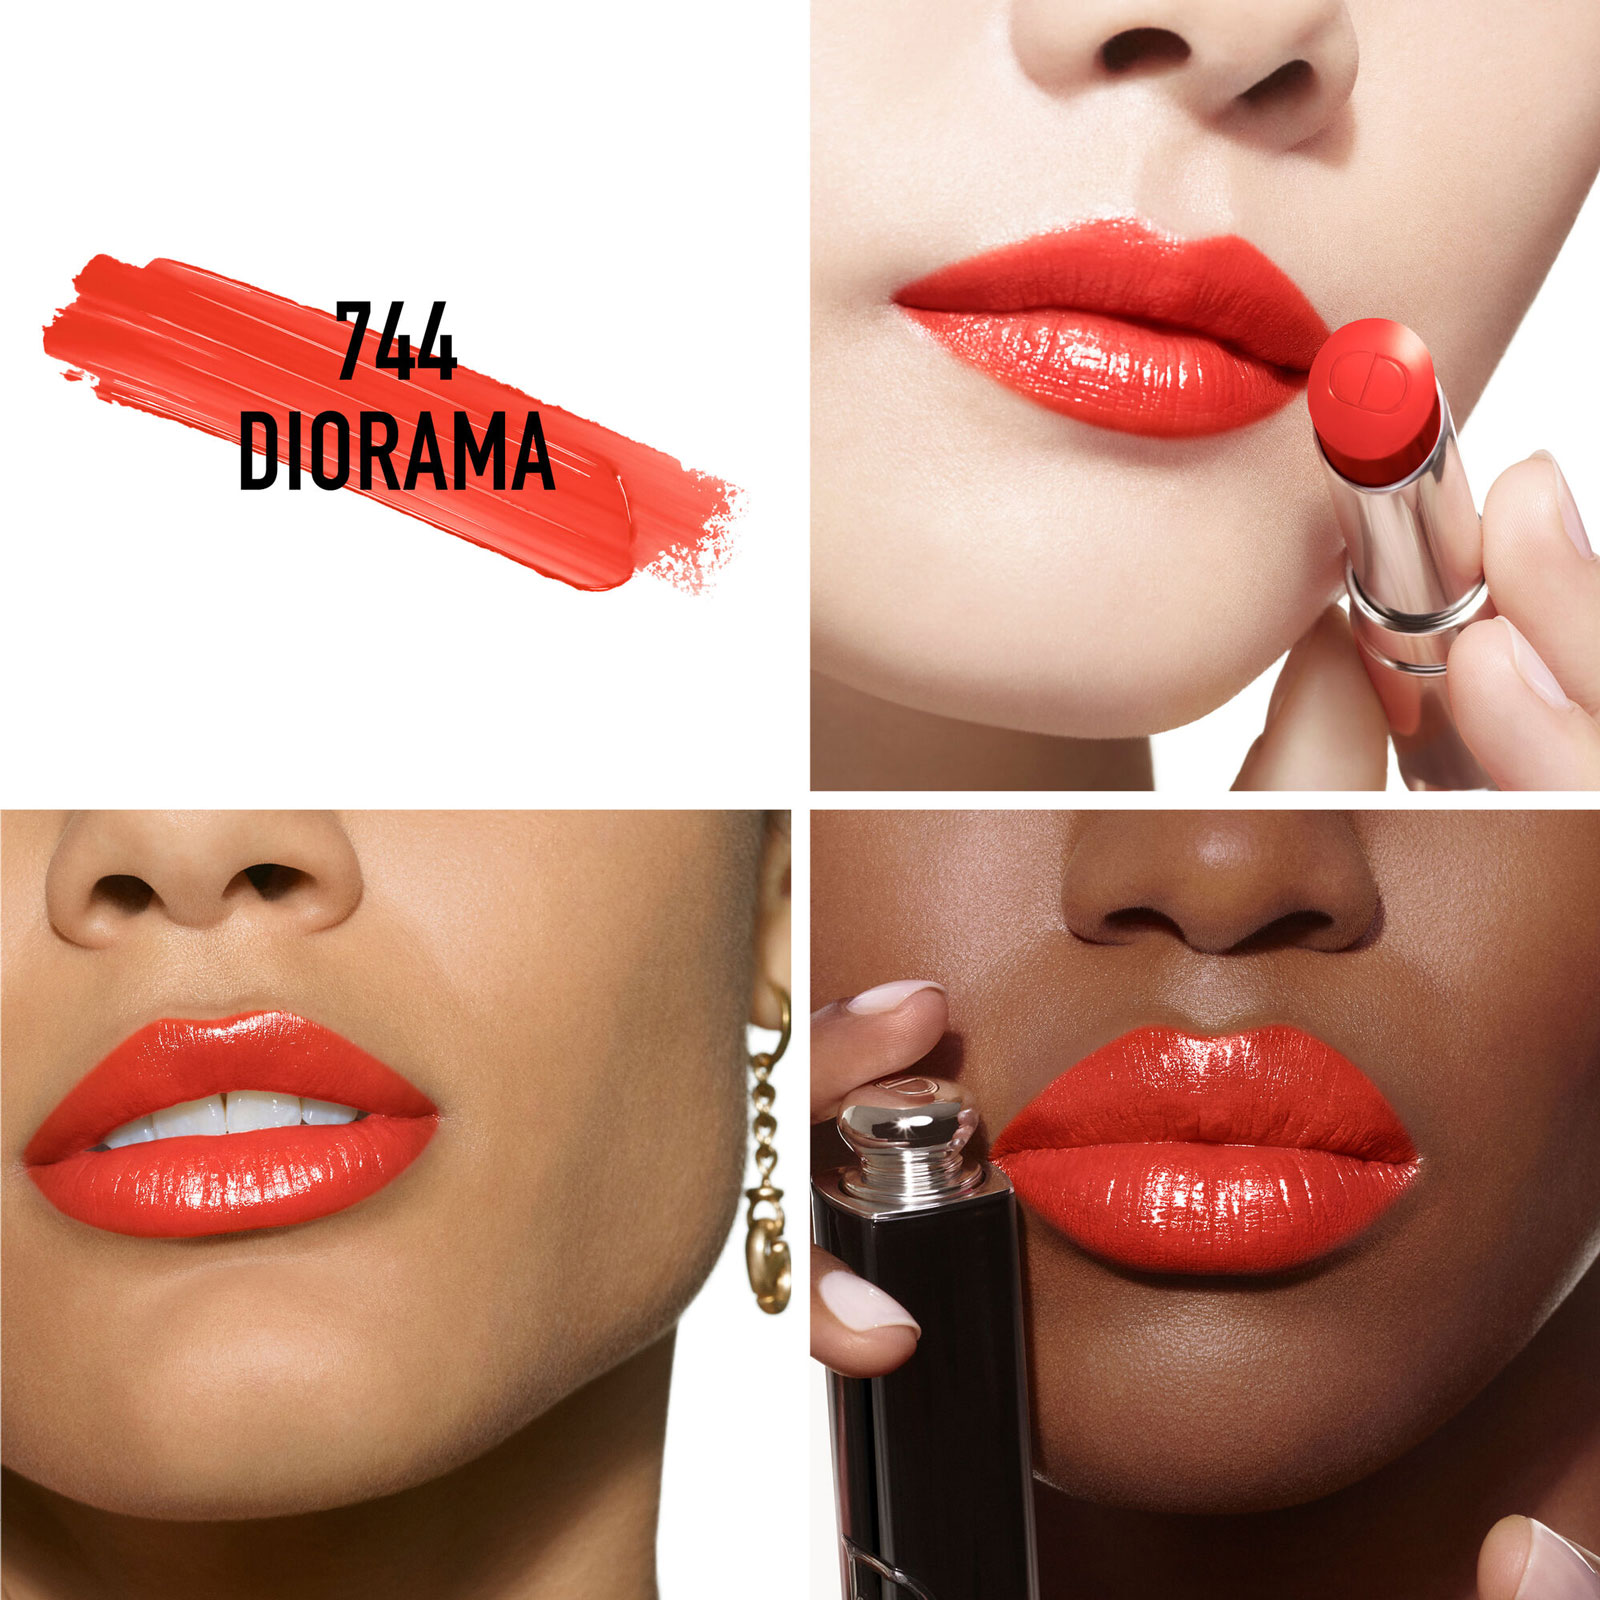 Dior Addict Shine Lipstick Refill 3.2G 744 Diorama